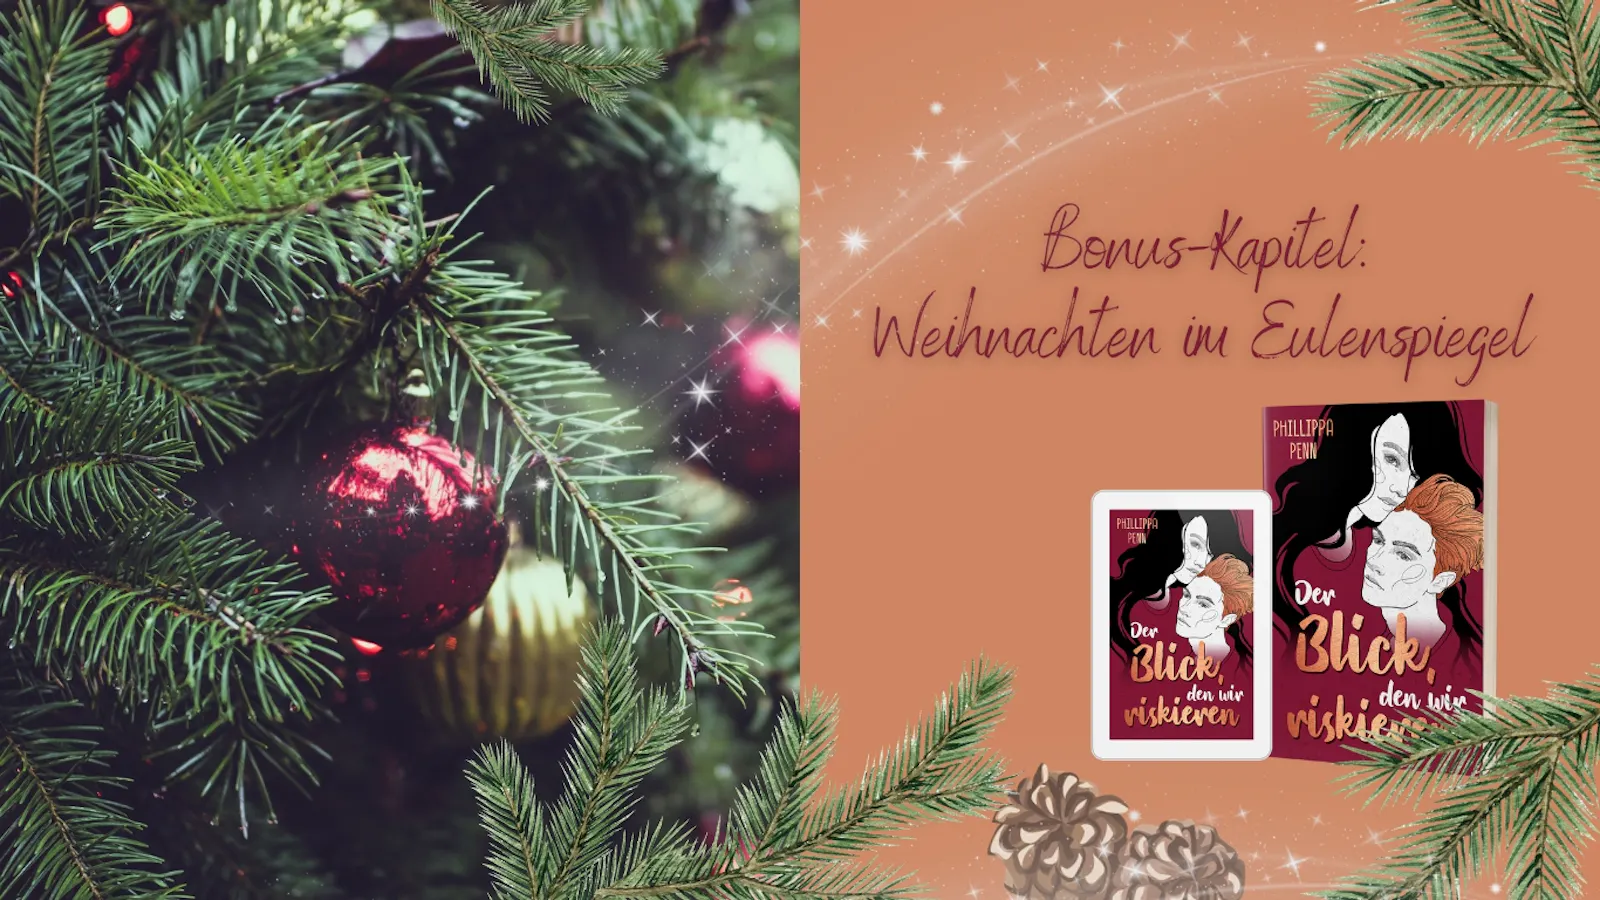 Die Titelgrafik zeigt eine rote Kugel an einem Weihnachtsbaum, neben einer Abbildung des Buches "Der Blick, den wir riskieren". In großen roten Lettern ist zu Lesen: Bonus-Kapitel. Weihnachten im Eulenspiegel.